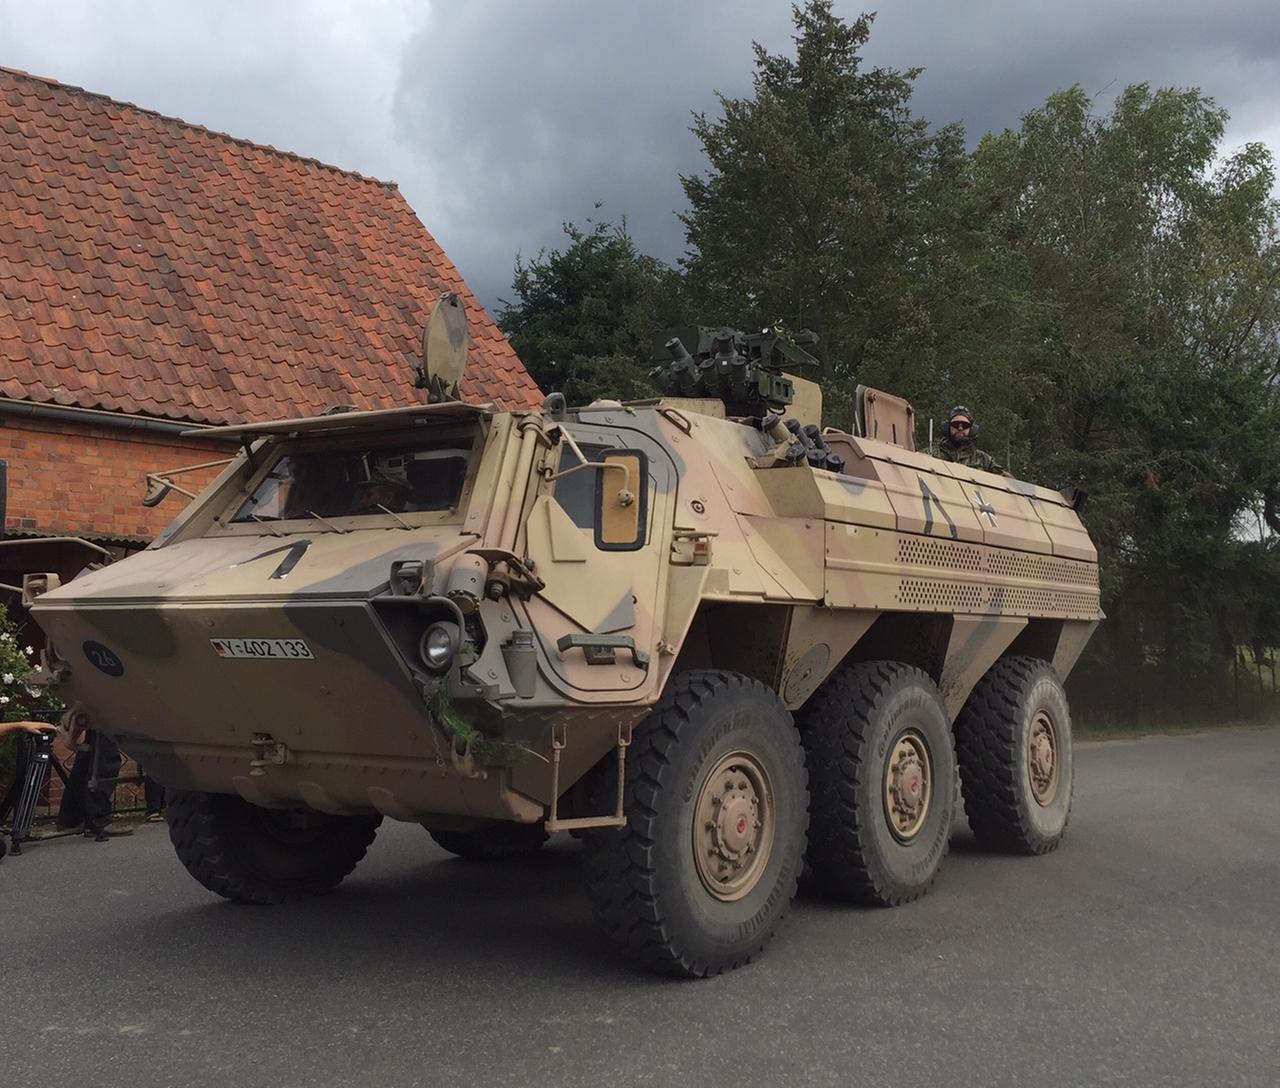 Ein Panzer steht auf der Straße in einem Dorf in Mecklenburg-Vorpommern